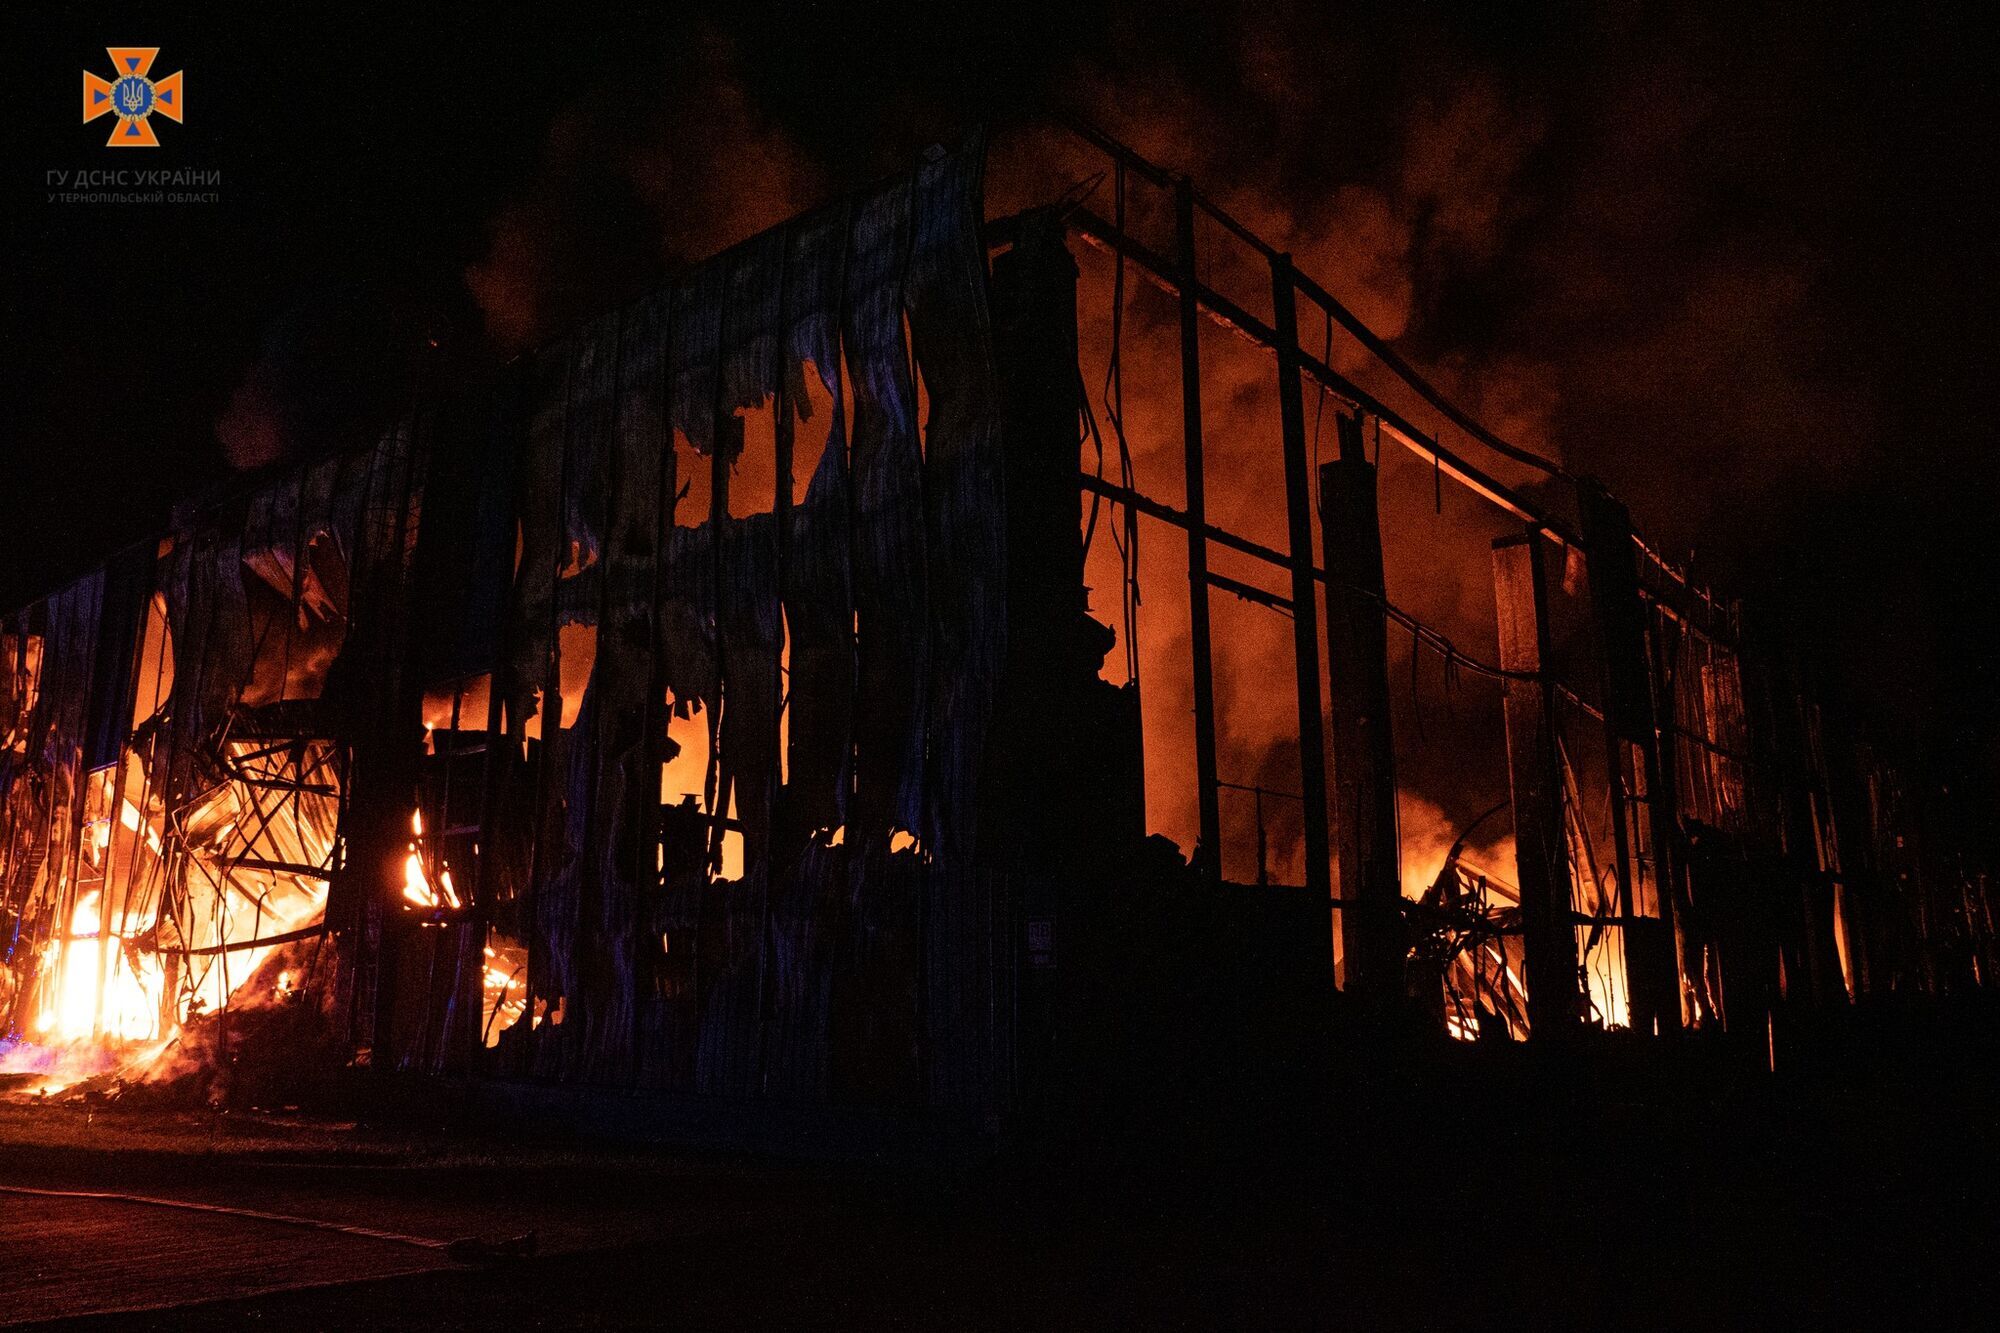 Пожар в Тернополе: в городе горел завод, предварительно речь идет о предприятии Penoboard